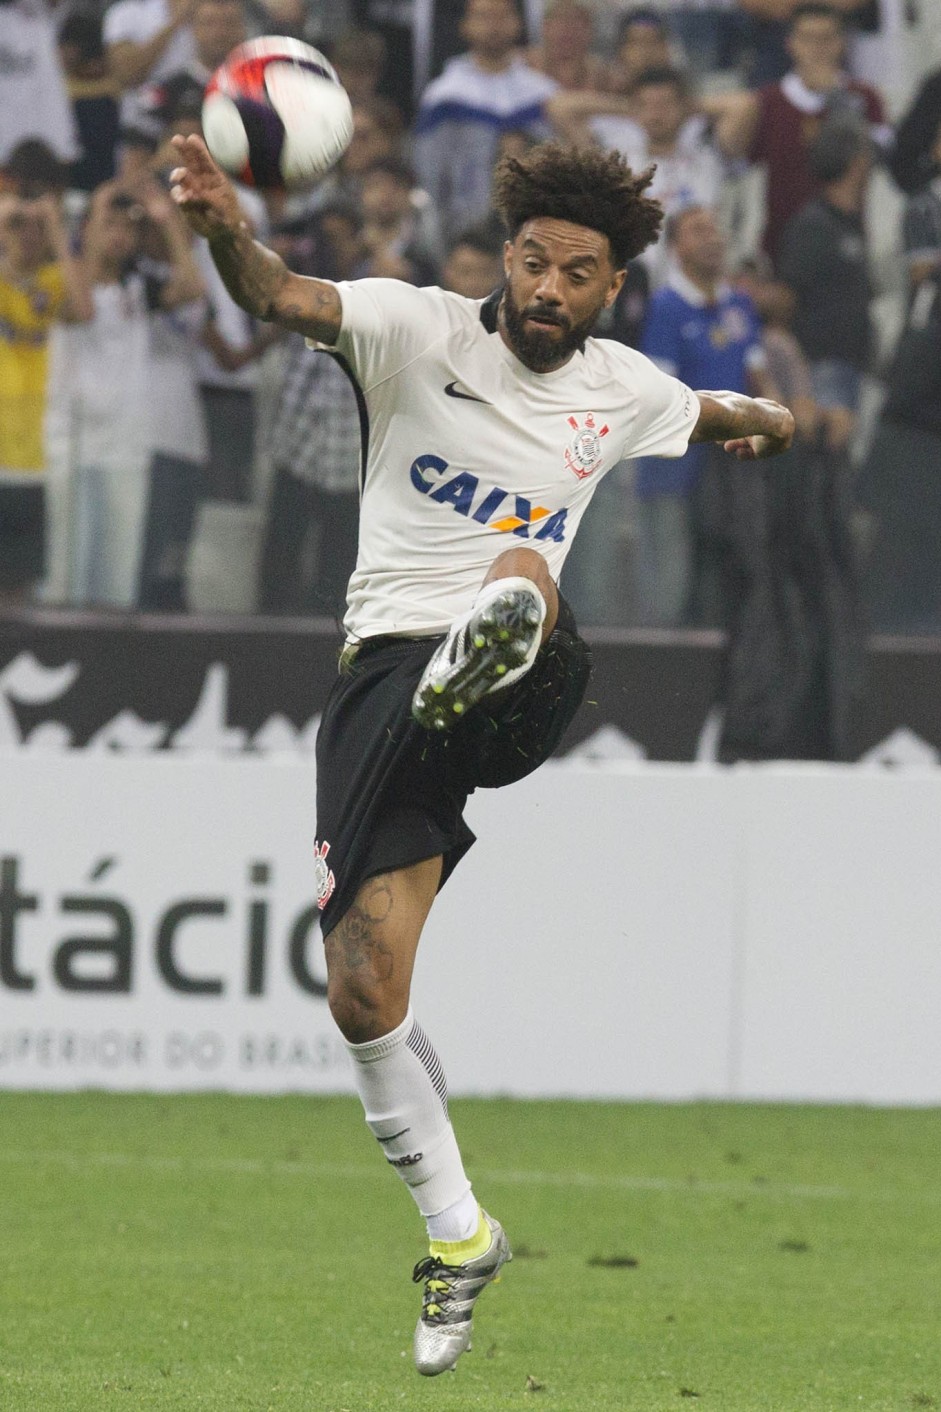 Cristian em jogada contra a Ferroviria  em amistoso na Arena Corinthians